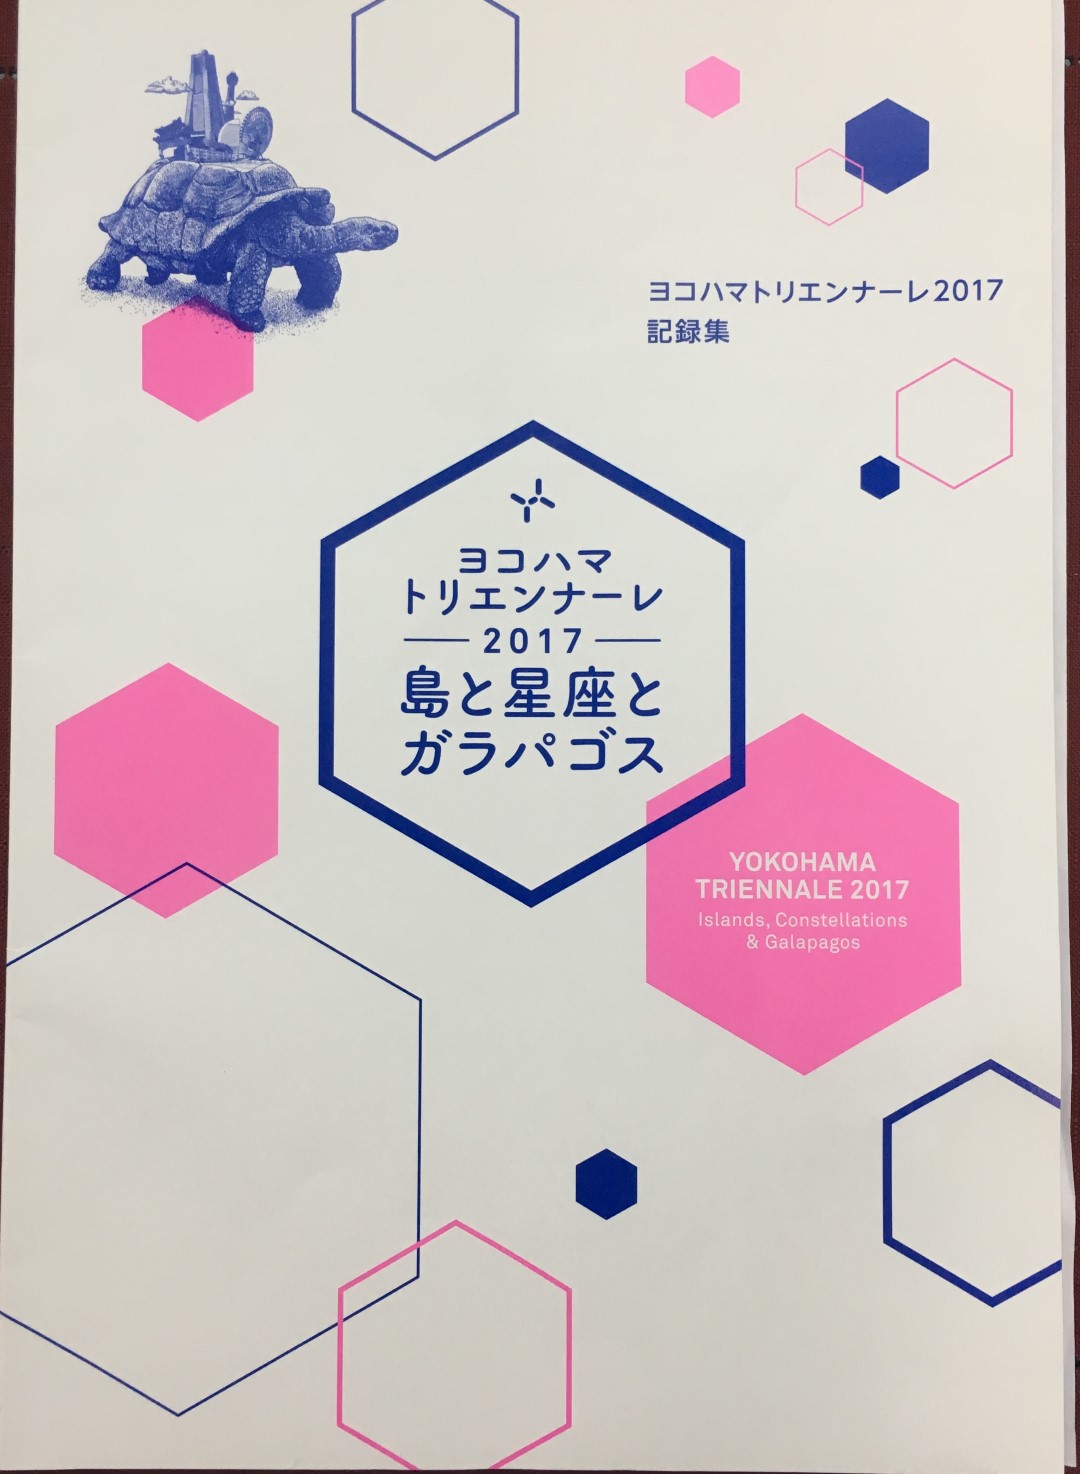 日本橫濱三年展報告書出版  YOKOHAMA TRIENNALE 2017